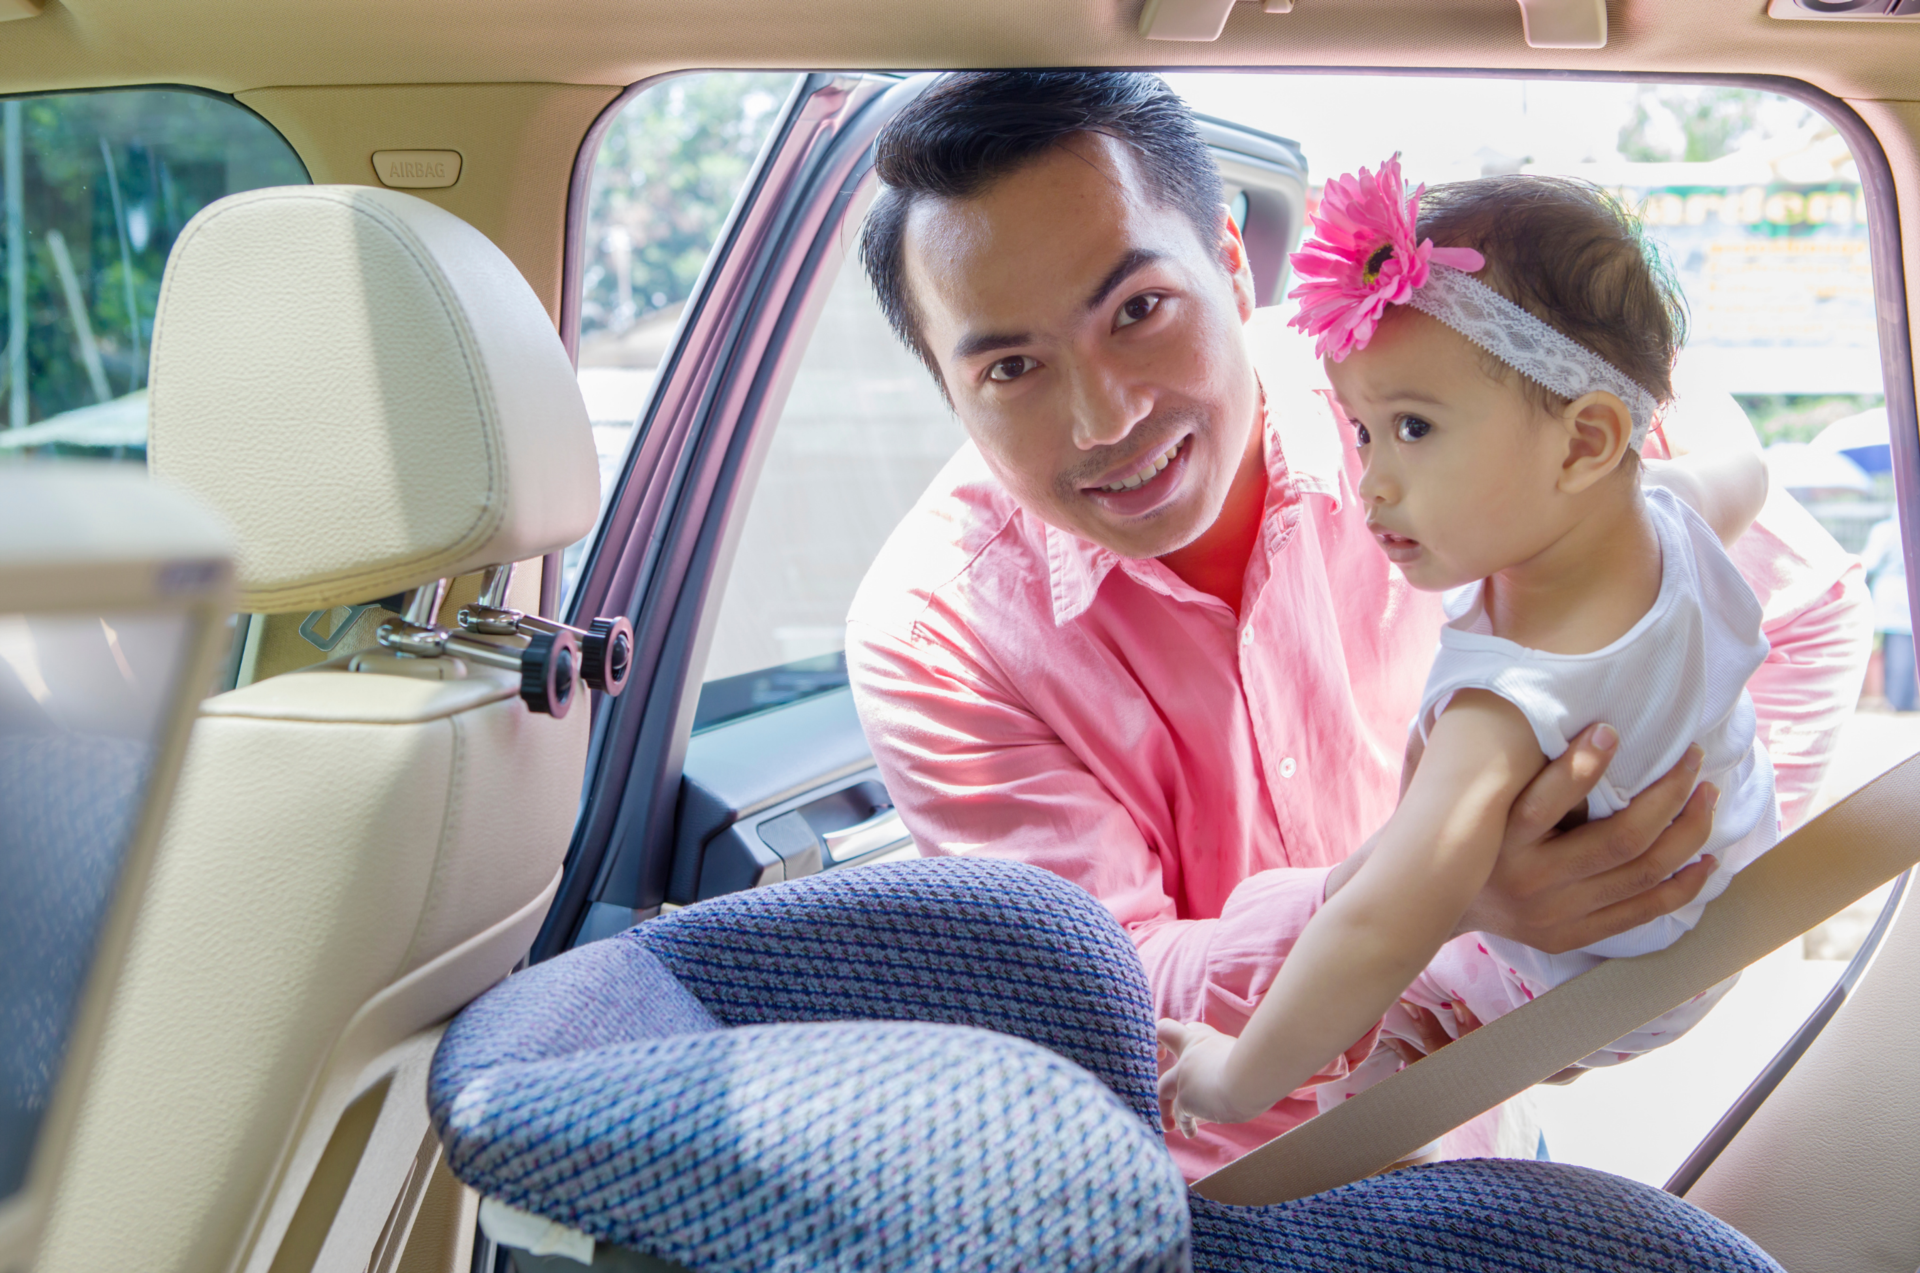 Une personne met un enfant d’âge préscolaire dans un siège d’auto orienté vers l’arrière sur le siège arrière d’un véhicule.